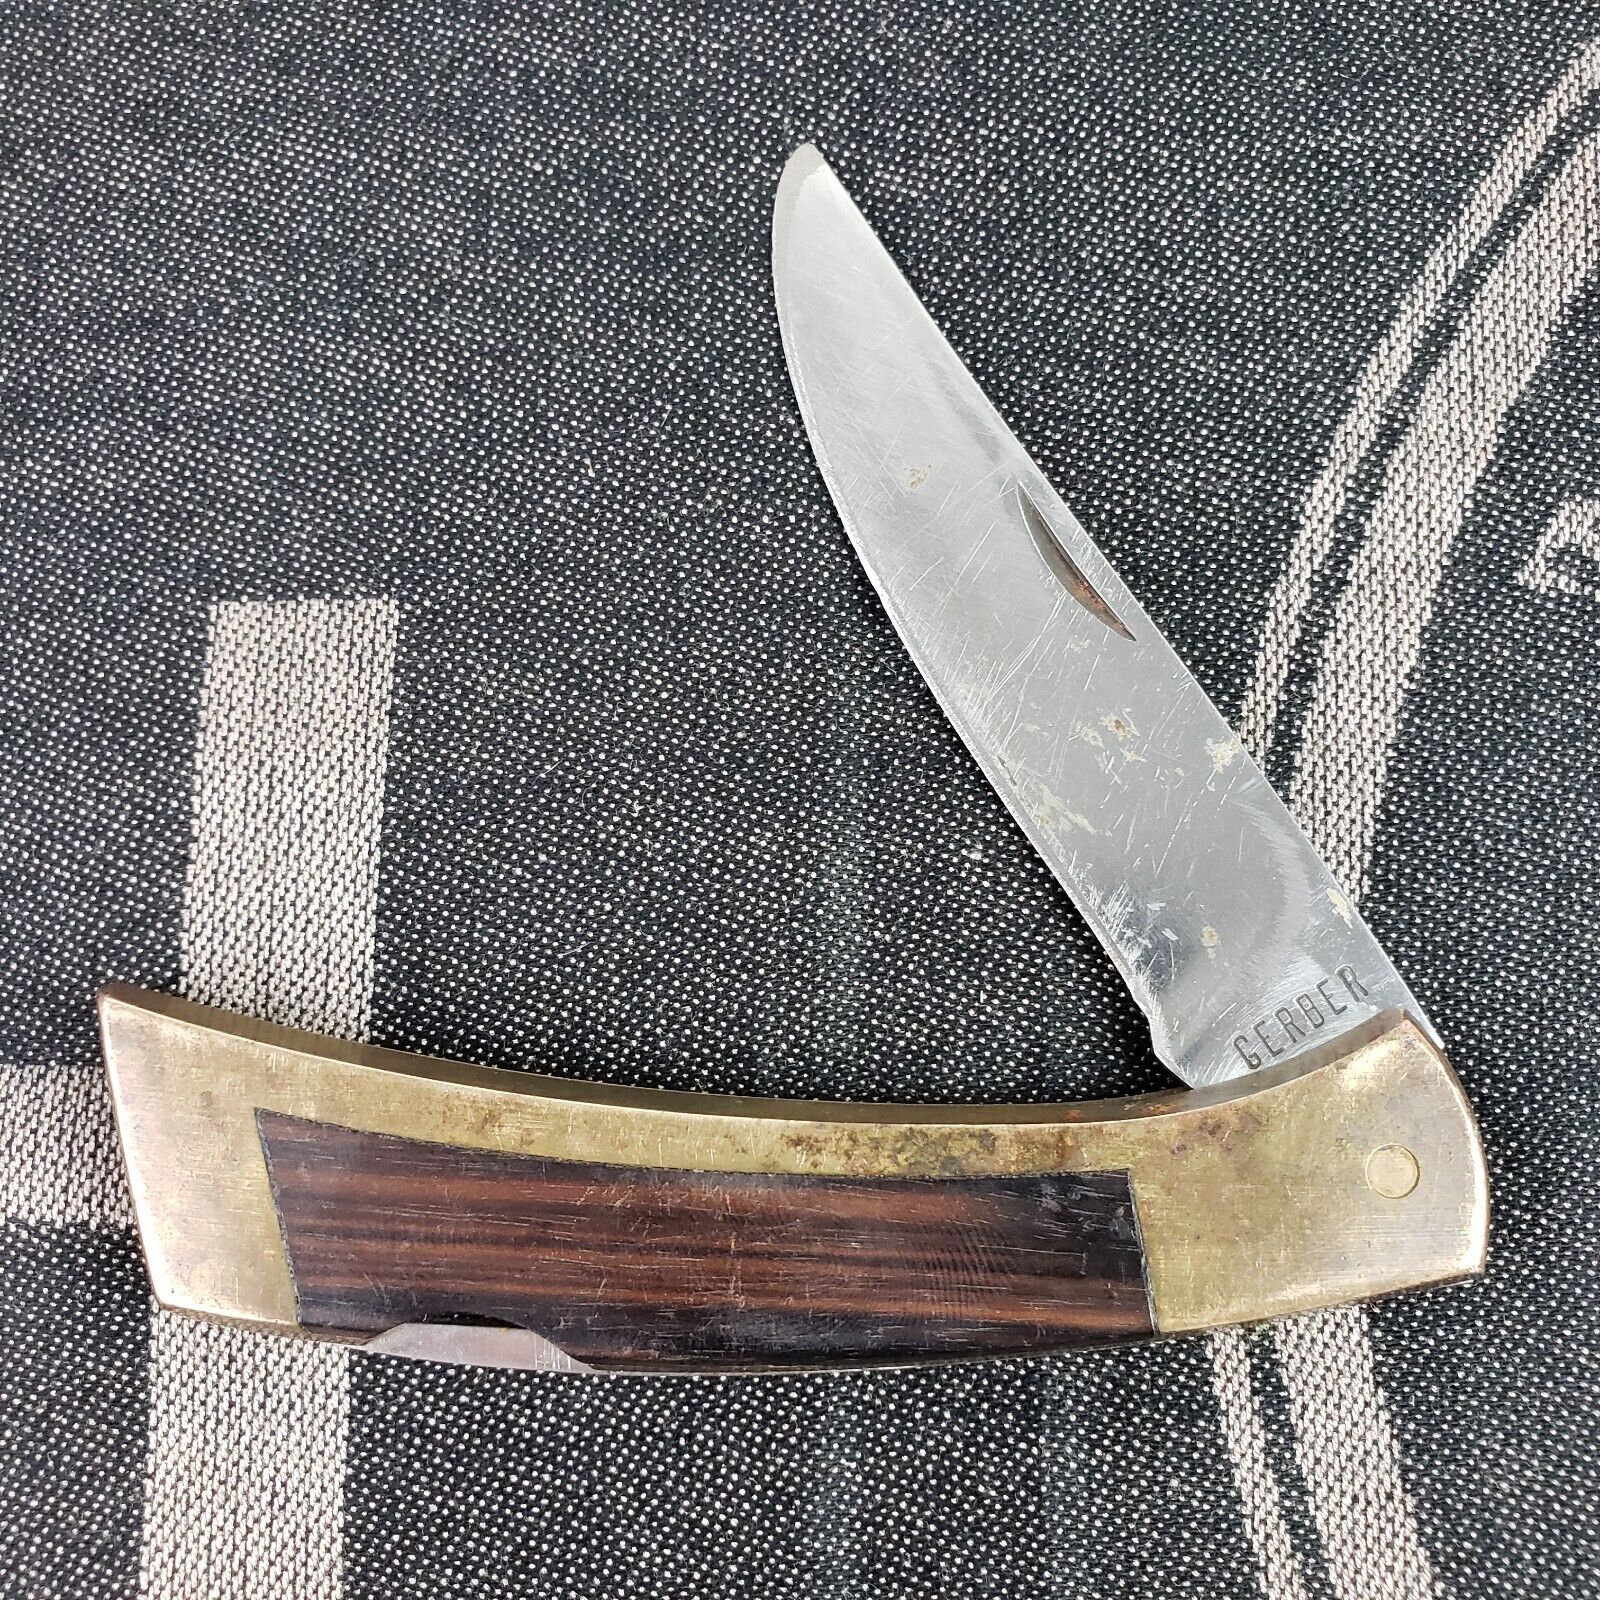 Vintage Gerber Pocket Knife Lockback Portland OR USA 97223